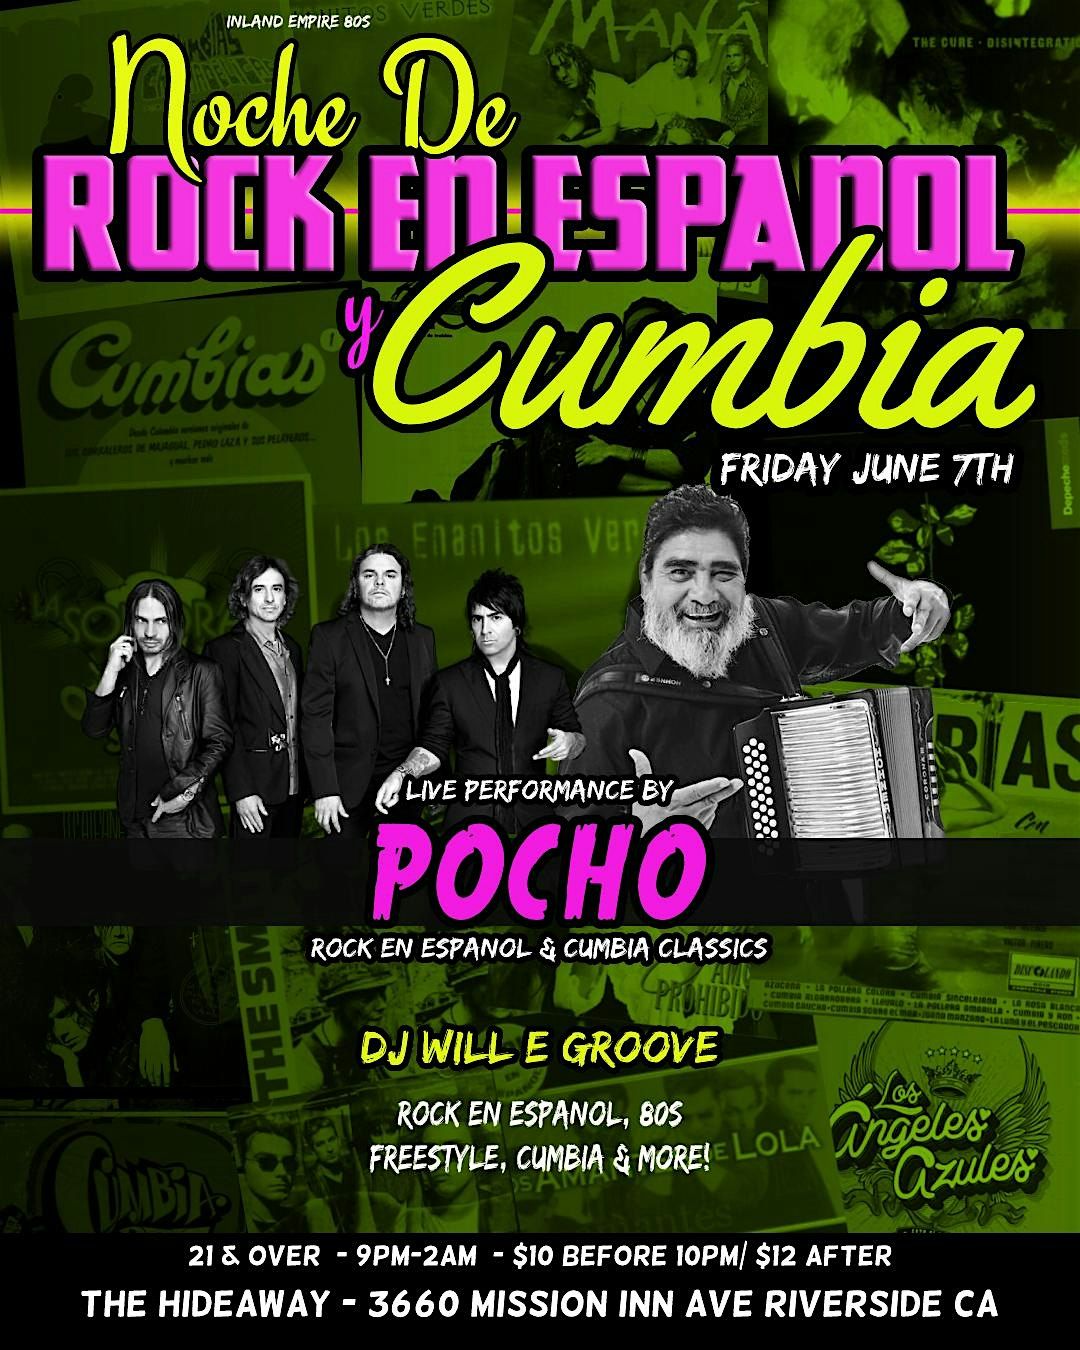 Live Rock en Espanol & Cumbia!